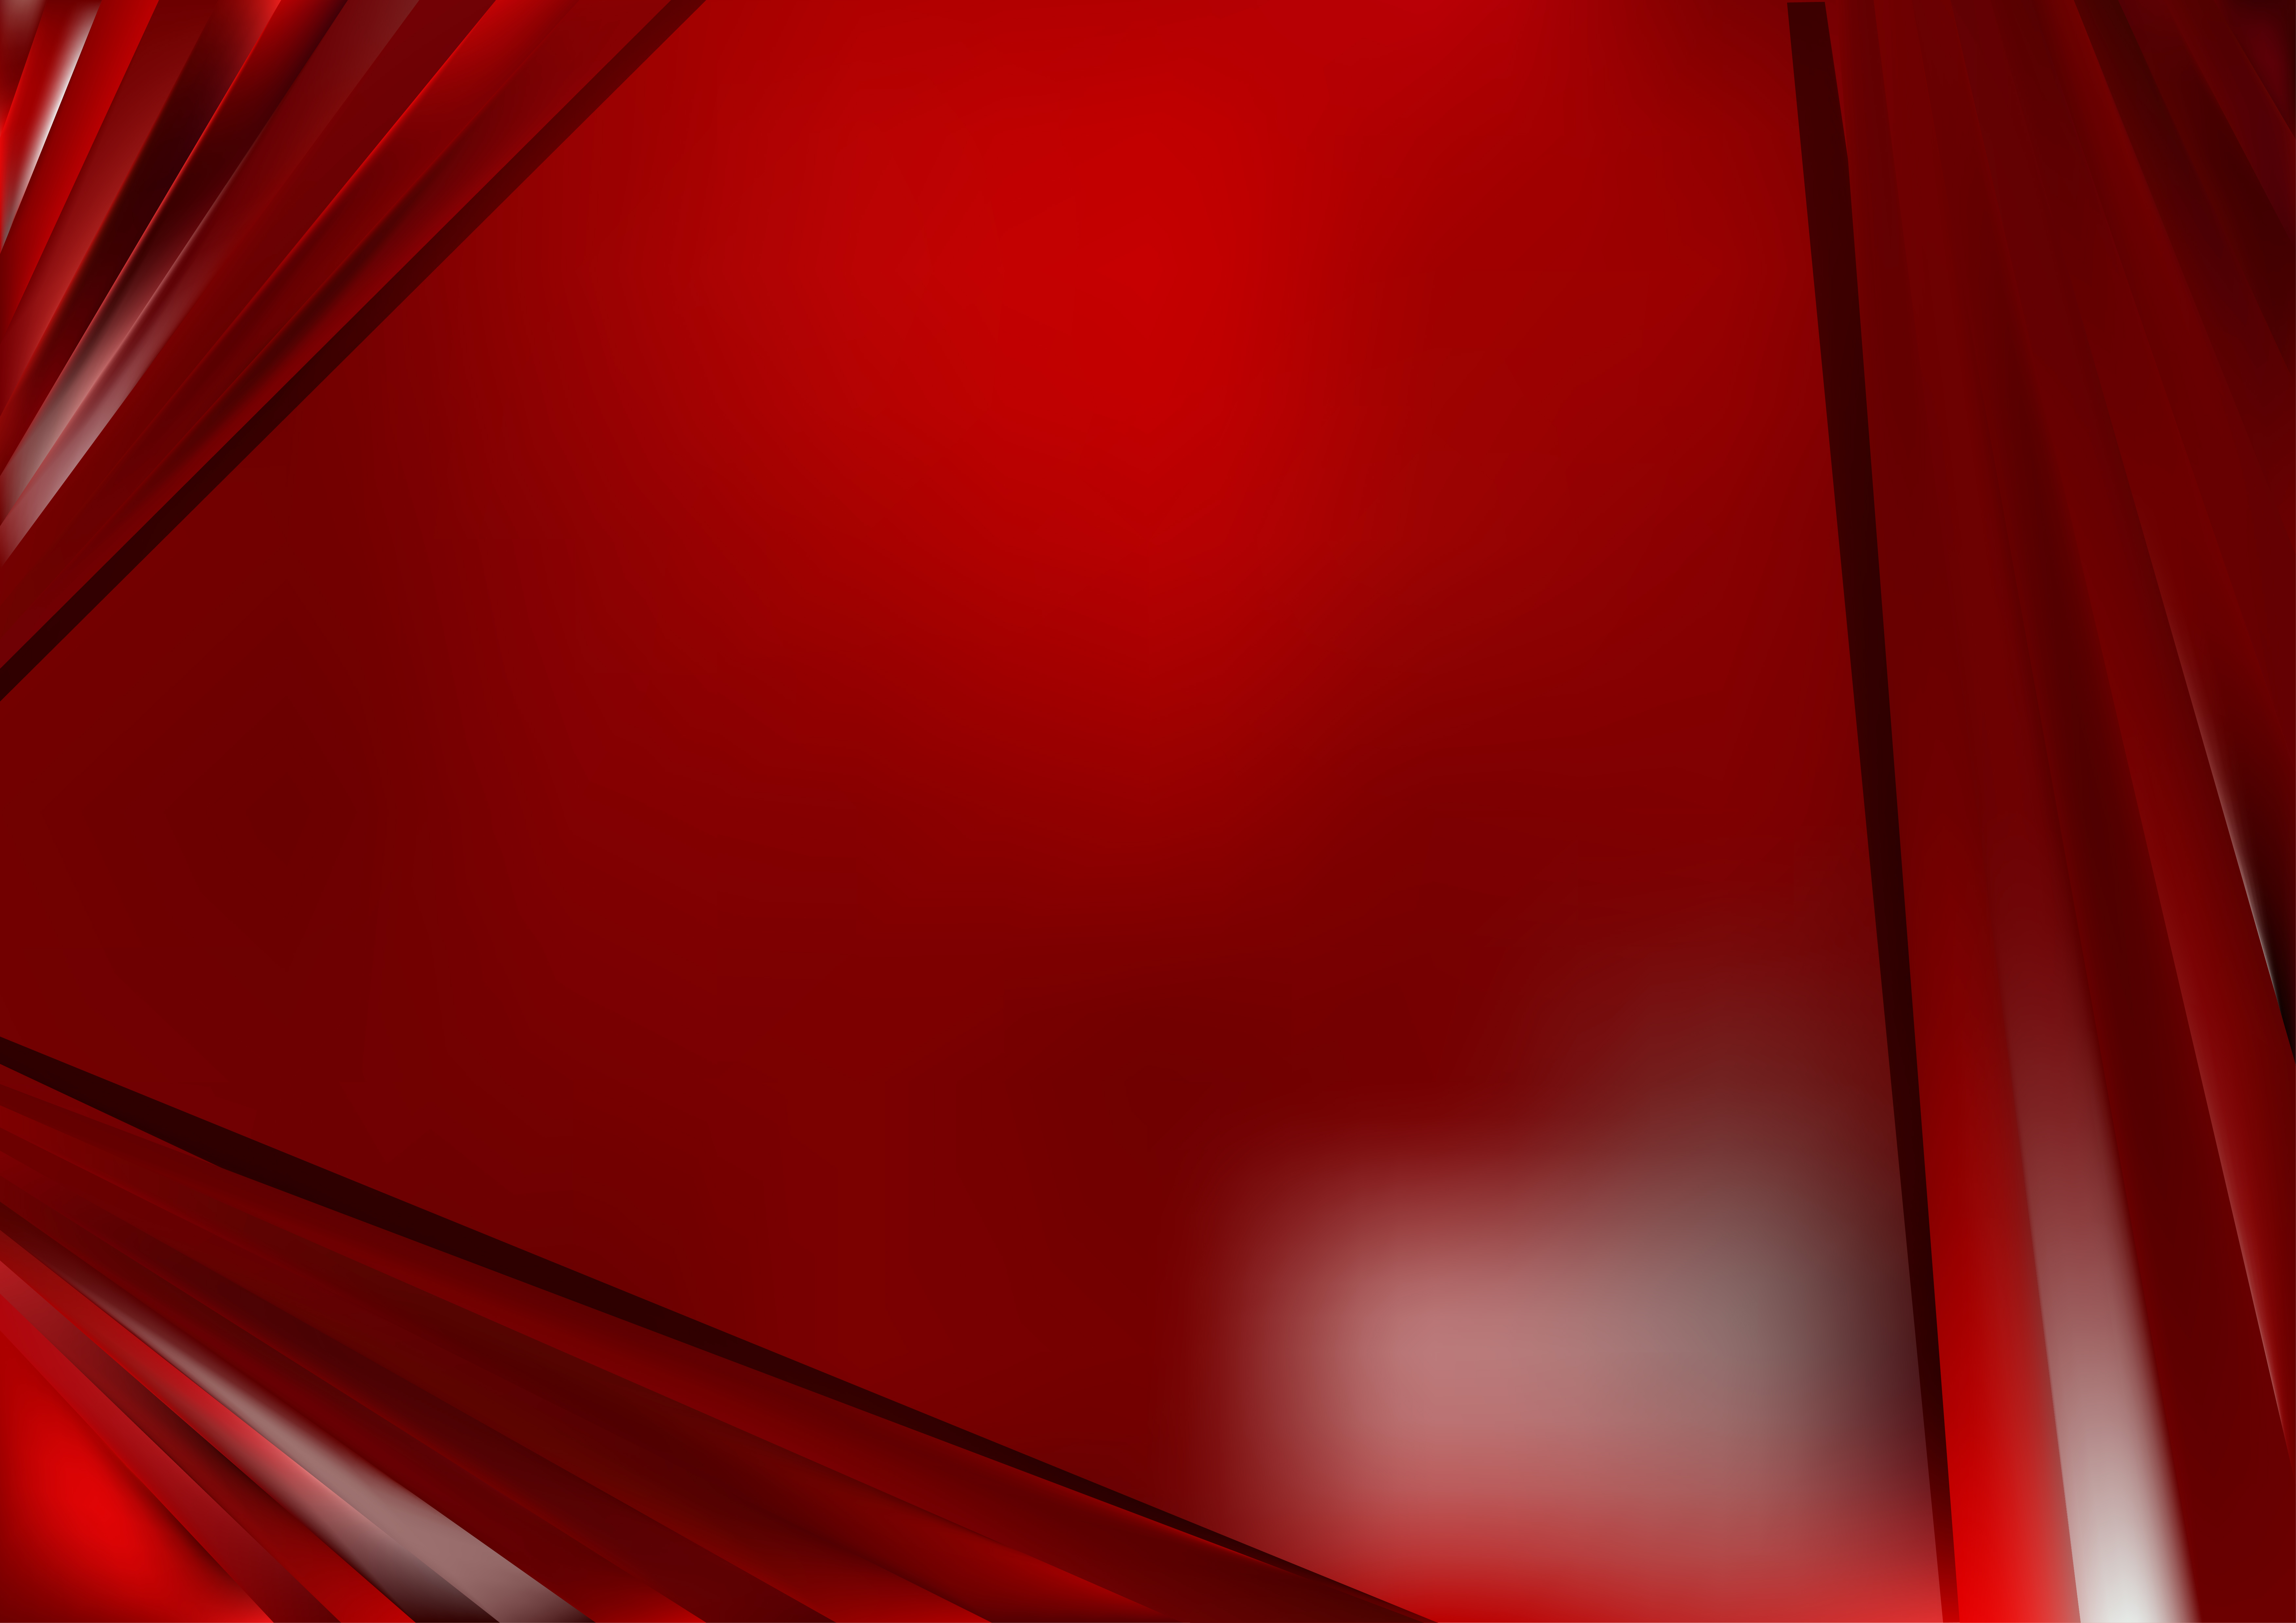 Hình nền đỏ bóng glossy sẽ khiến cho màn hình của bạn trở nên sáng bóng và đầy cuốn hút. Với sự pha trộn này giữa màu đỏ và ánh sáng bóng, bạn sẽ có được một hình nền độc đáo và rực rỡ.